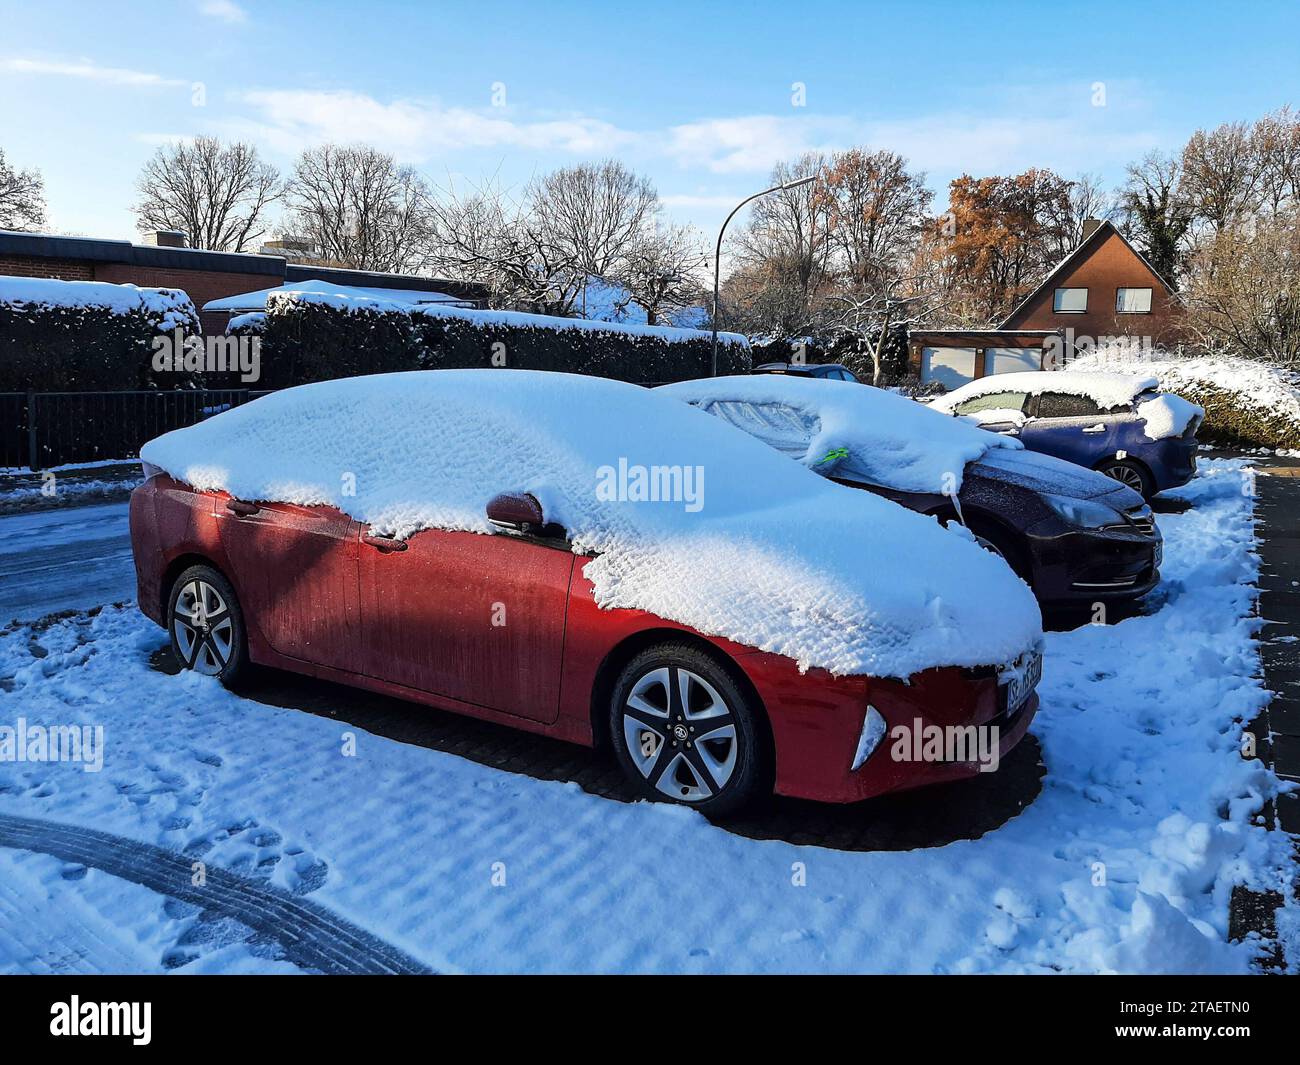 Auto komplett im Schnee gefangen Stockfotografie - Alamy